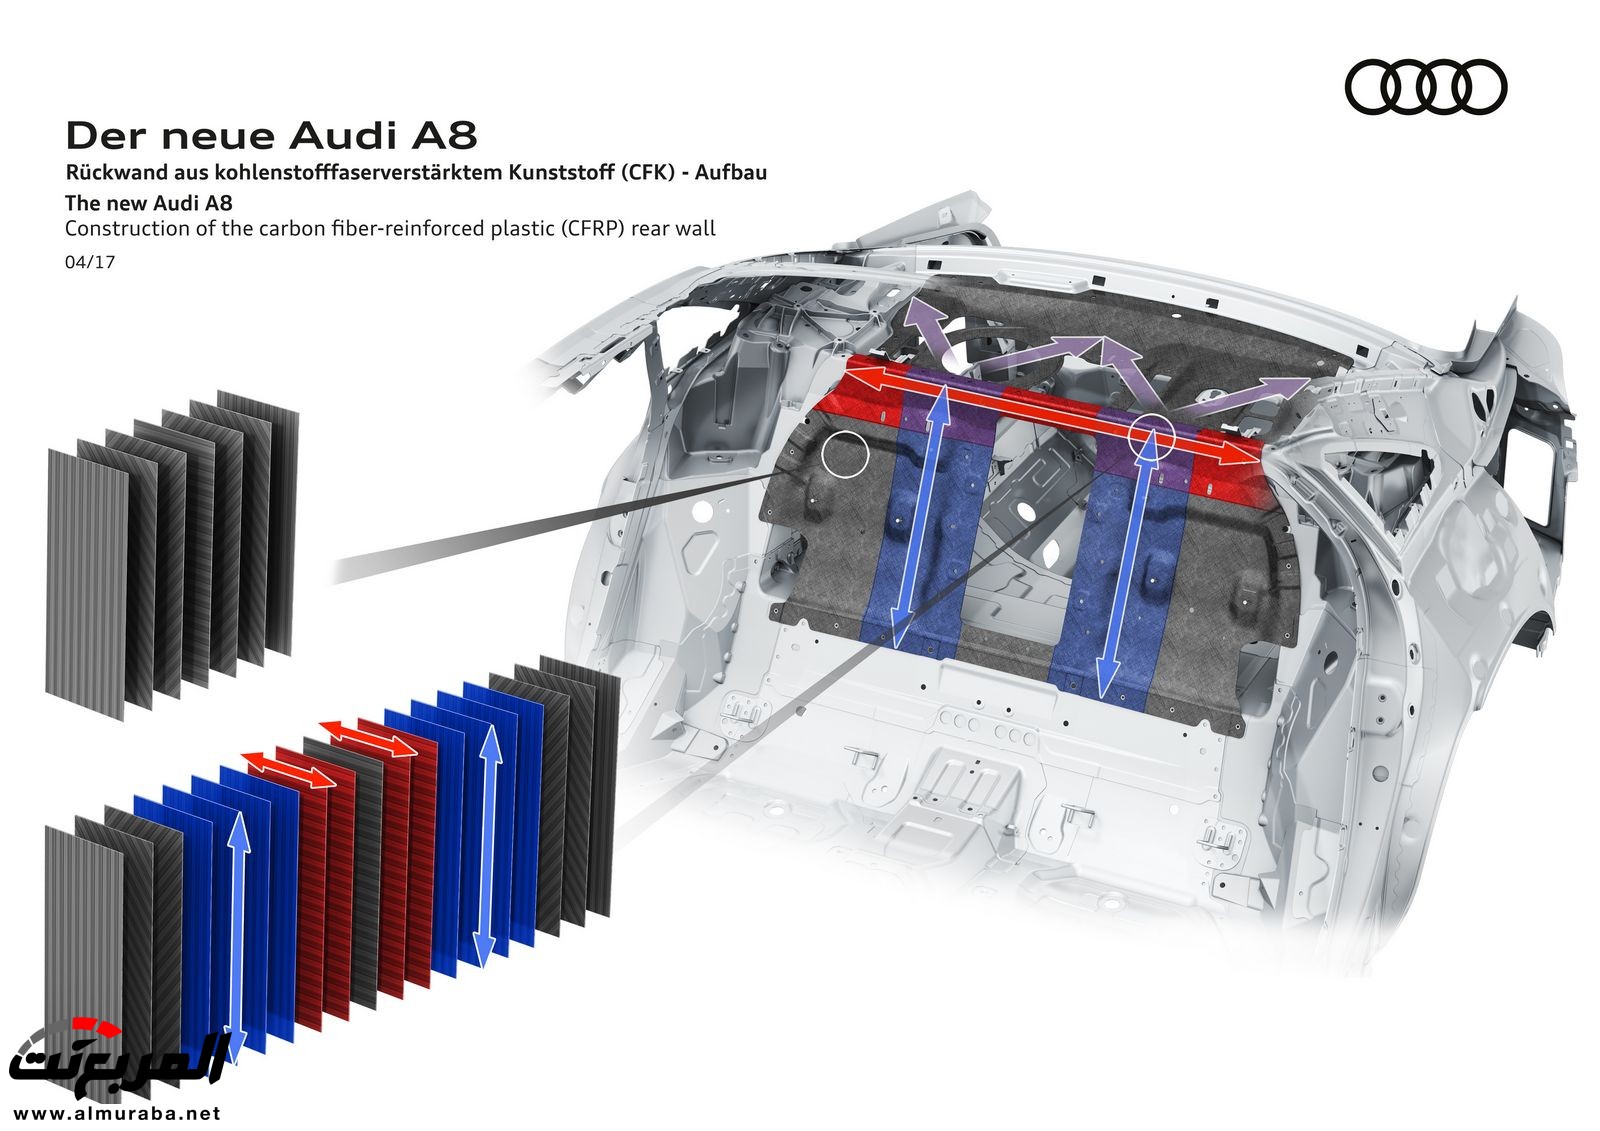 أودي A8 2018 الجديدة كلياً تكشف نفسها بتصميم وتقنيات متطورة "معلومات + 100 صورة" Audi A8 68